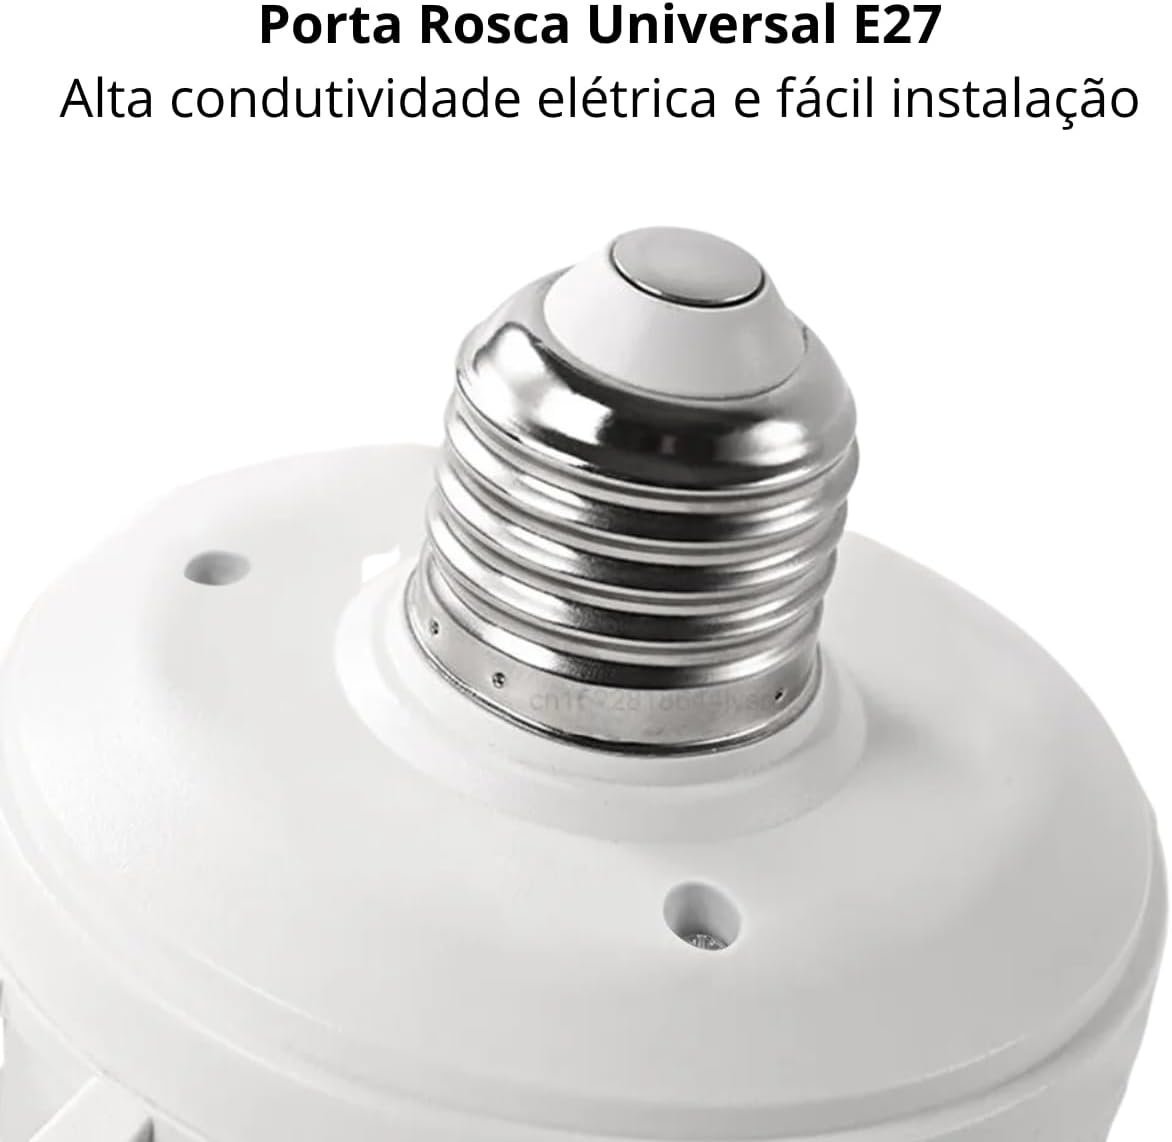 Ventilador De Teto Lâmpada LED 2 em 1 - Ilumine e Refresque Seu Espaço com Controle Remoto e Design  - 8